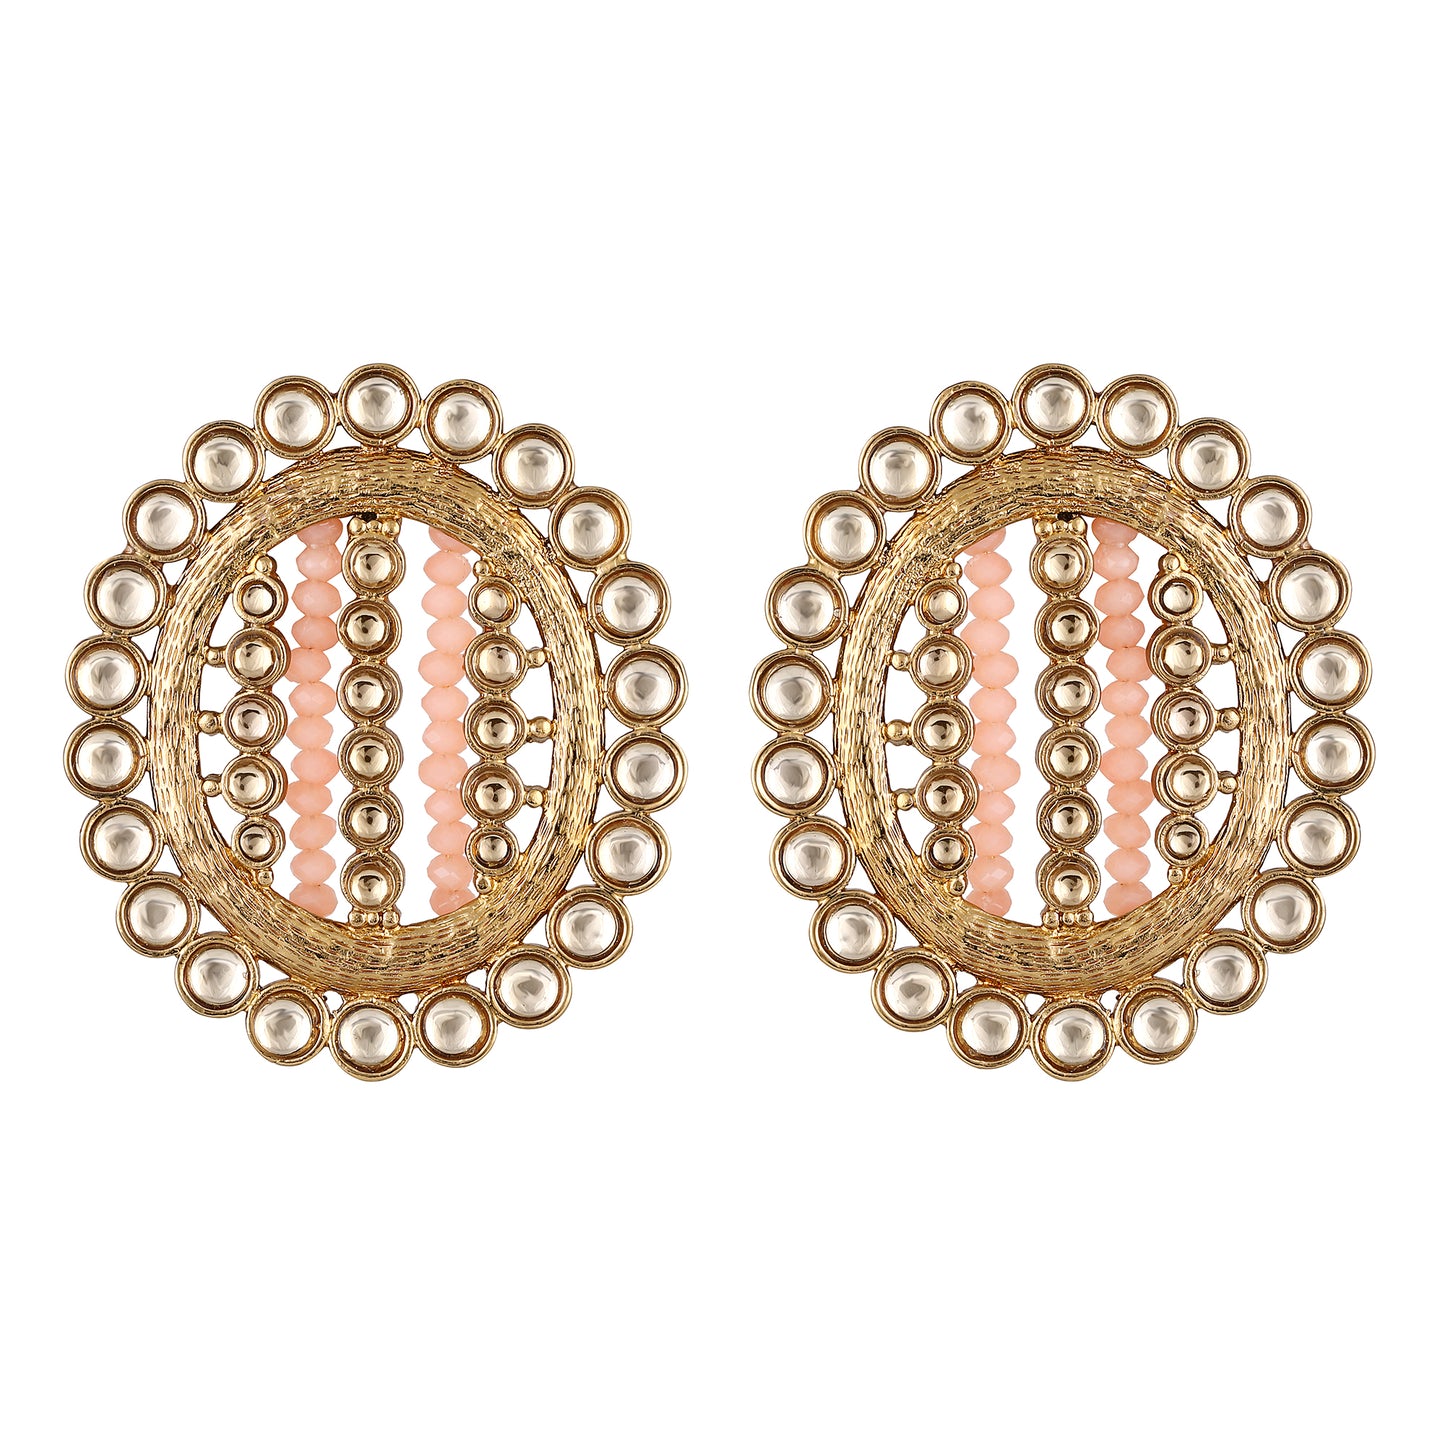 Bdiva 18K Gold Plated Kundan Orange Beads Earrings.